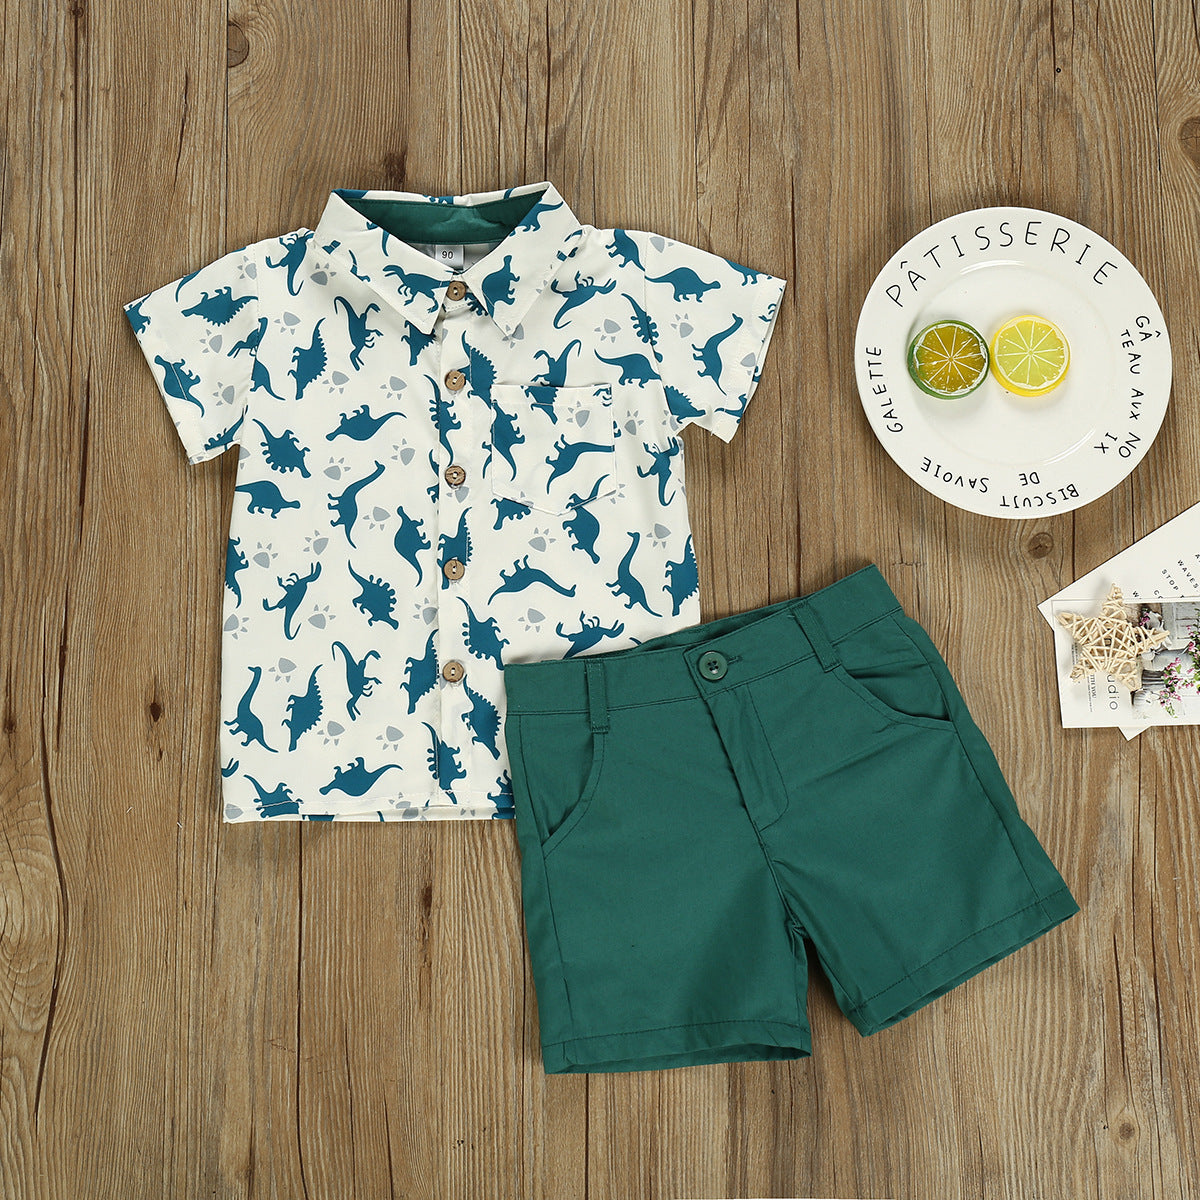 Boys' Dinosaur Print Summer Hawaiian Outfit: Shirt And Pants